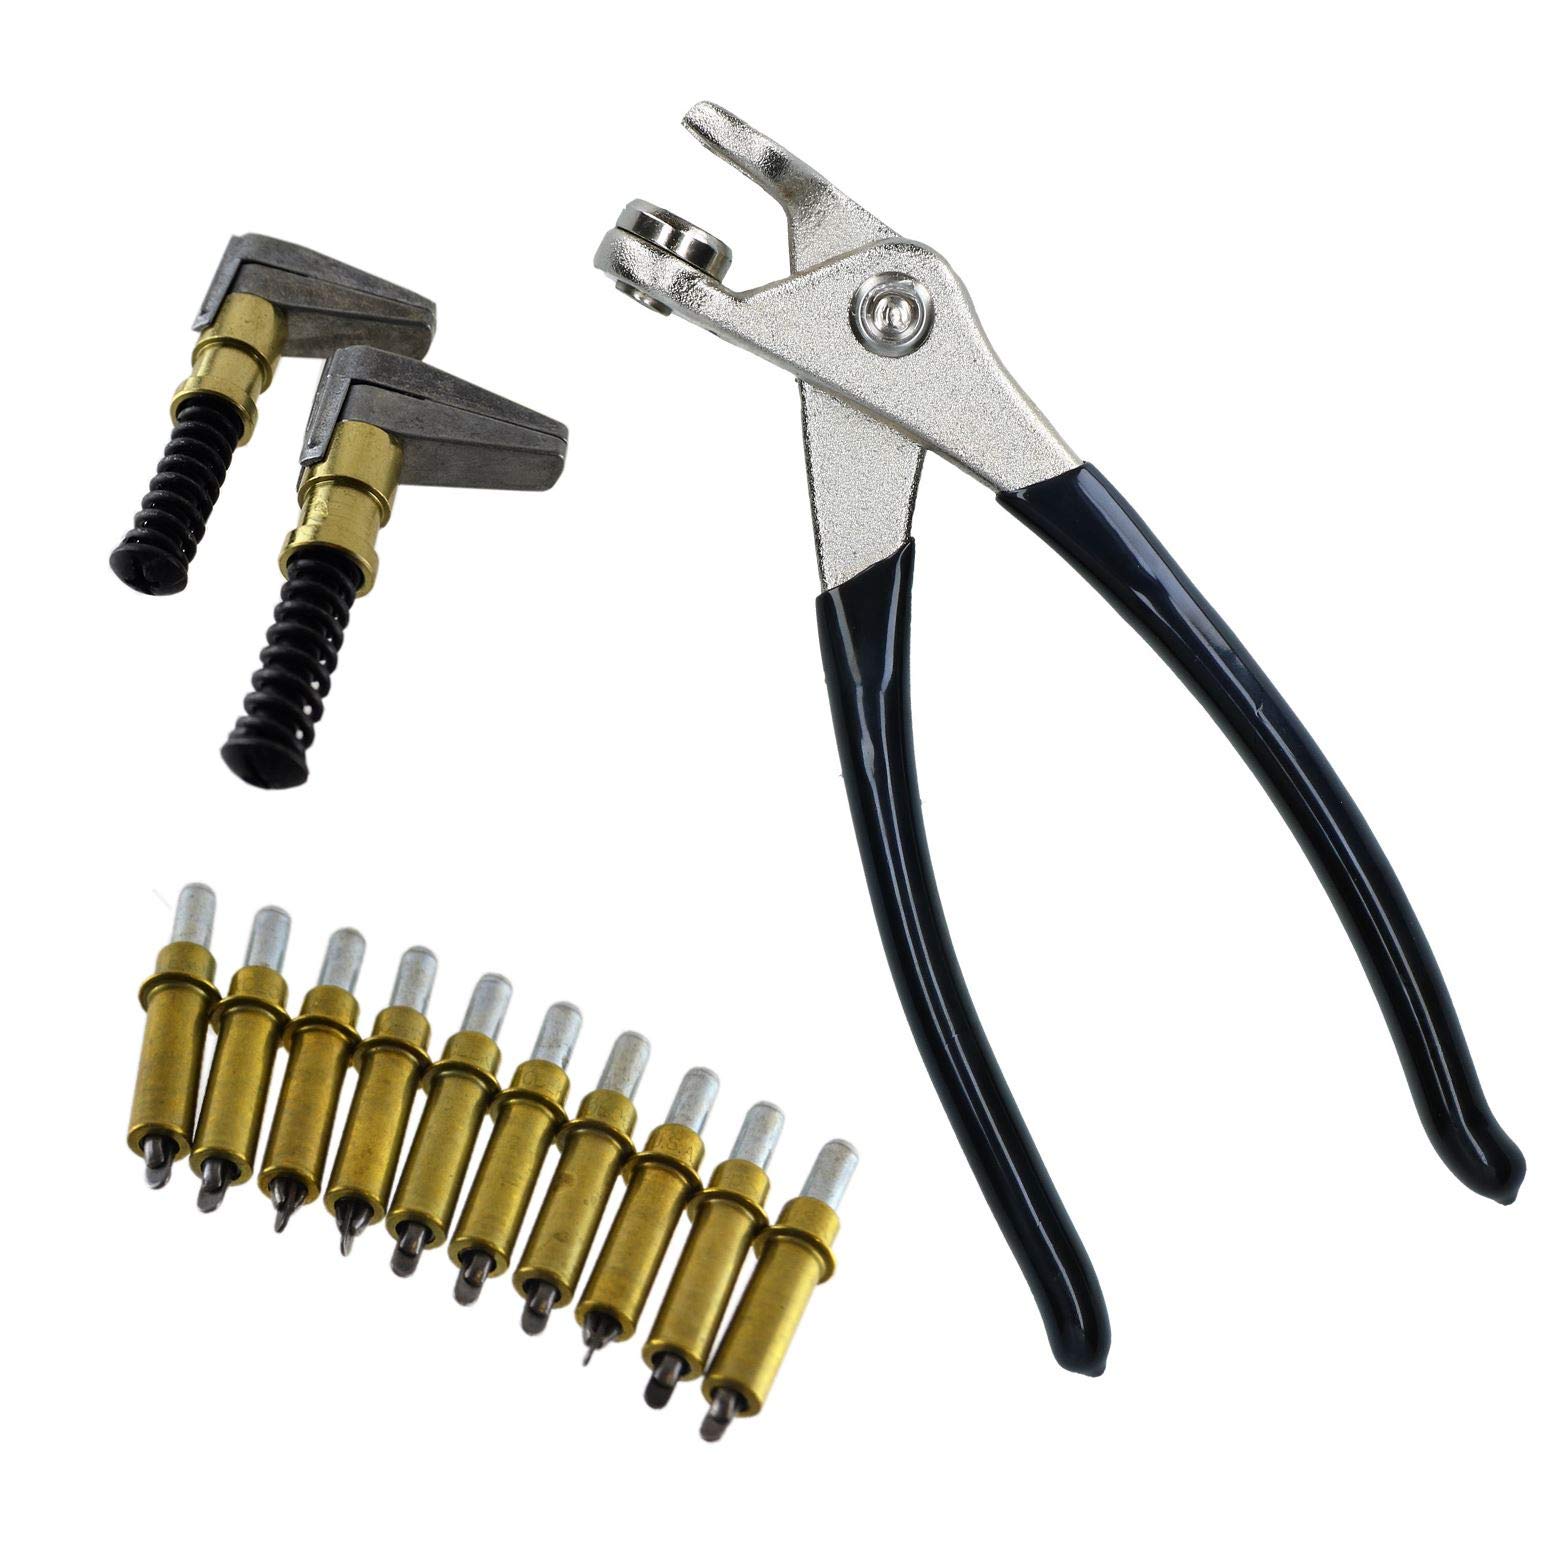 AB Tools Cleco Temporary Fasteners 3/16" Nieten Pins (10) Zangen und 2 Metallkeilspanner von AB Tools